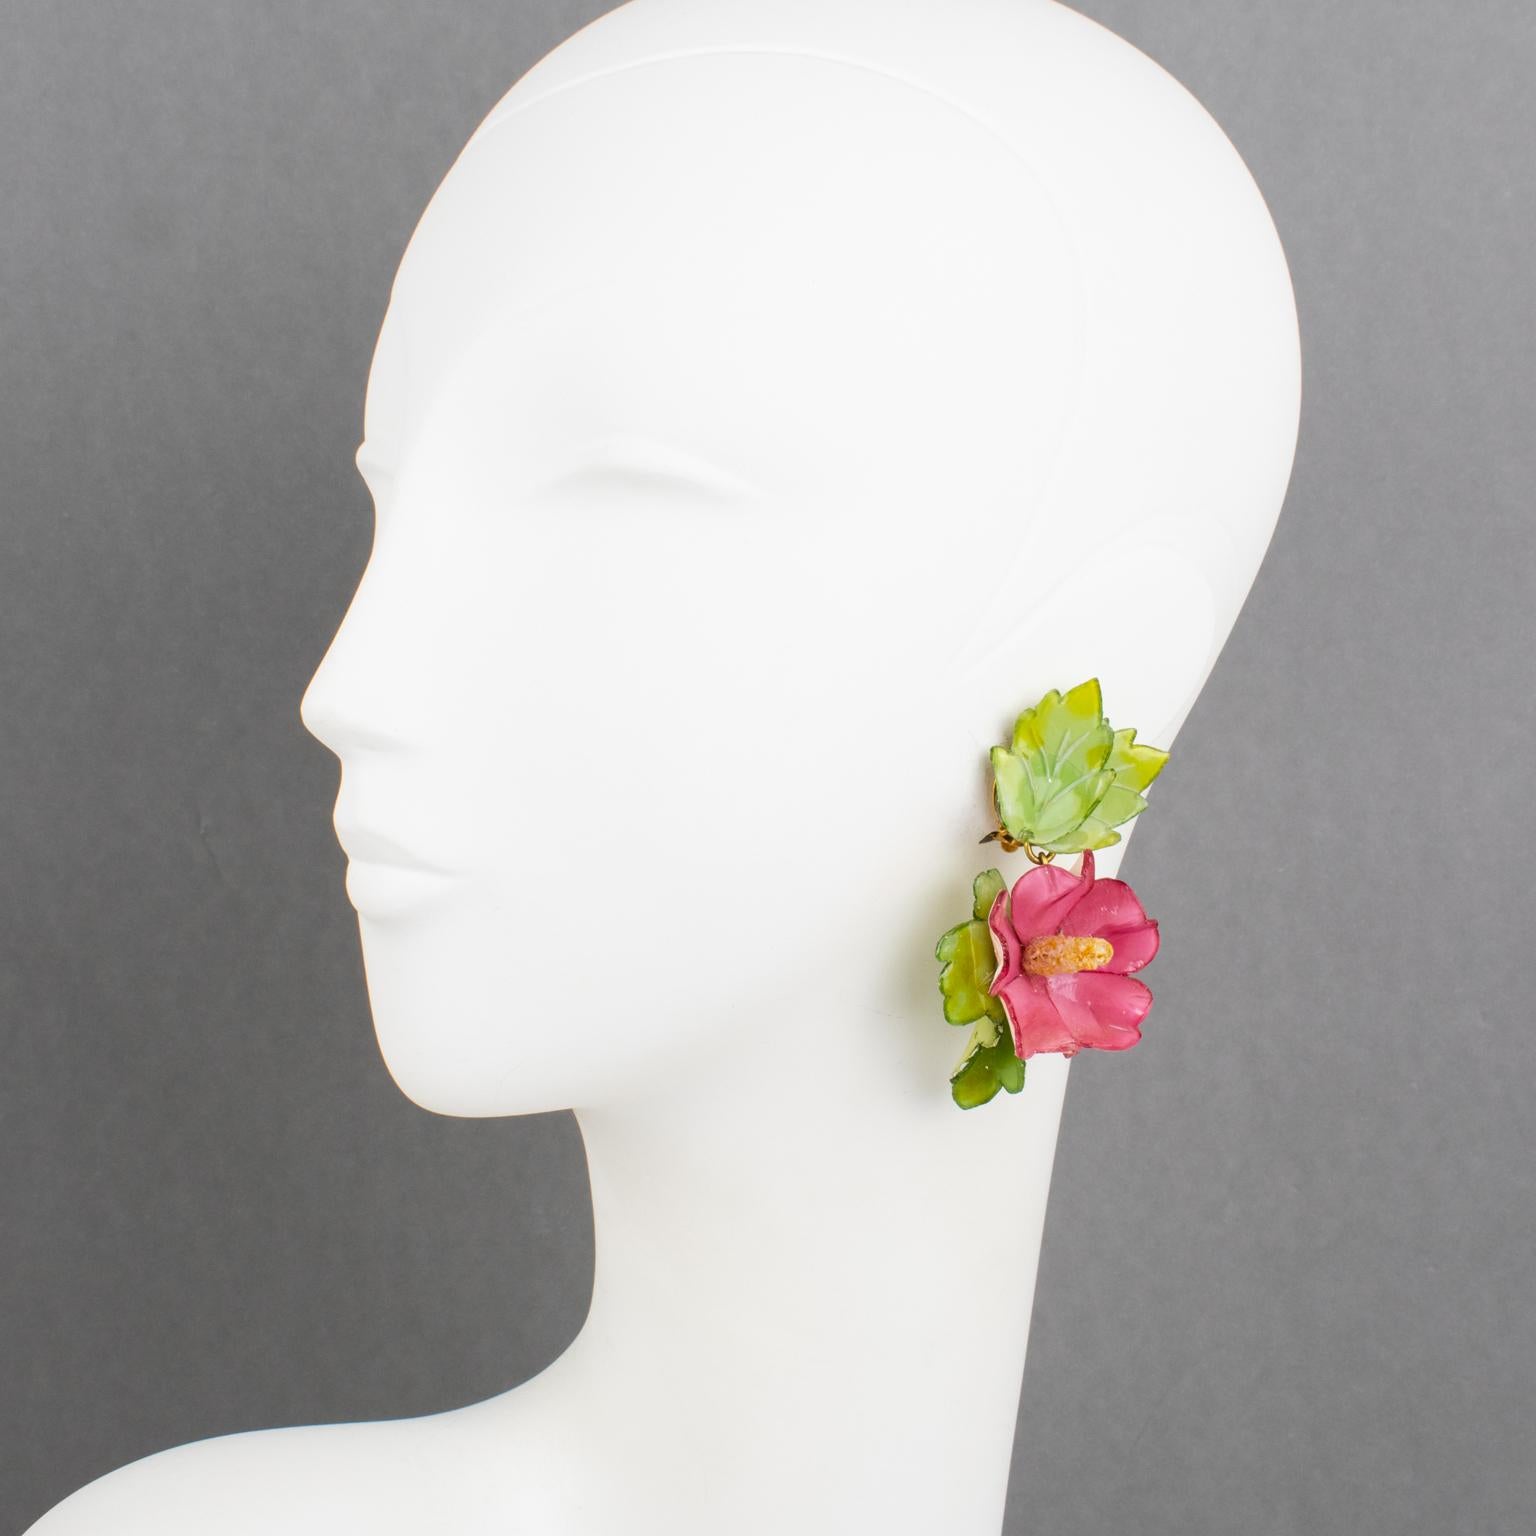 Cilea Paris hat für die französische Schmuckdesignerin Francoise Montague diese bezaubernden Ohrringe zum Anstecken aus Harz entworfen. Die Form des Anhängers zeigt eine dimensionale Hibiskusblüte mit Blättern. Die Stücke weisen puderrosa und grüne